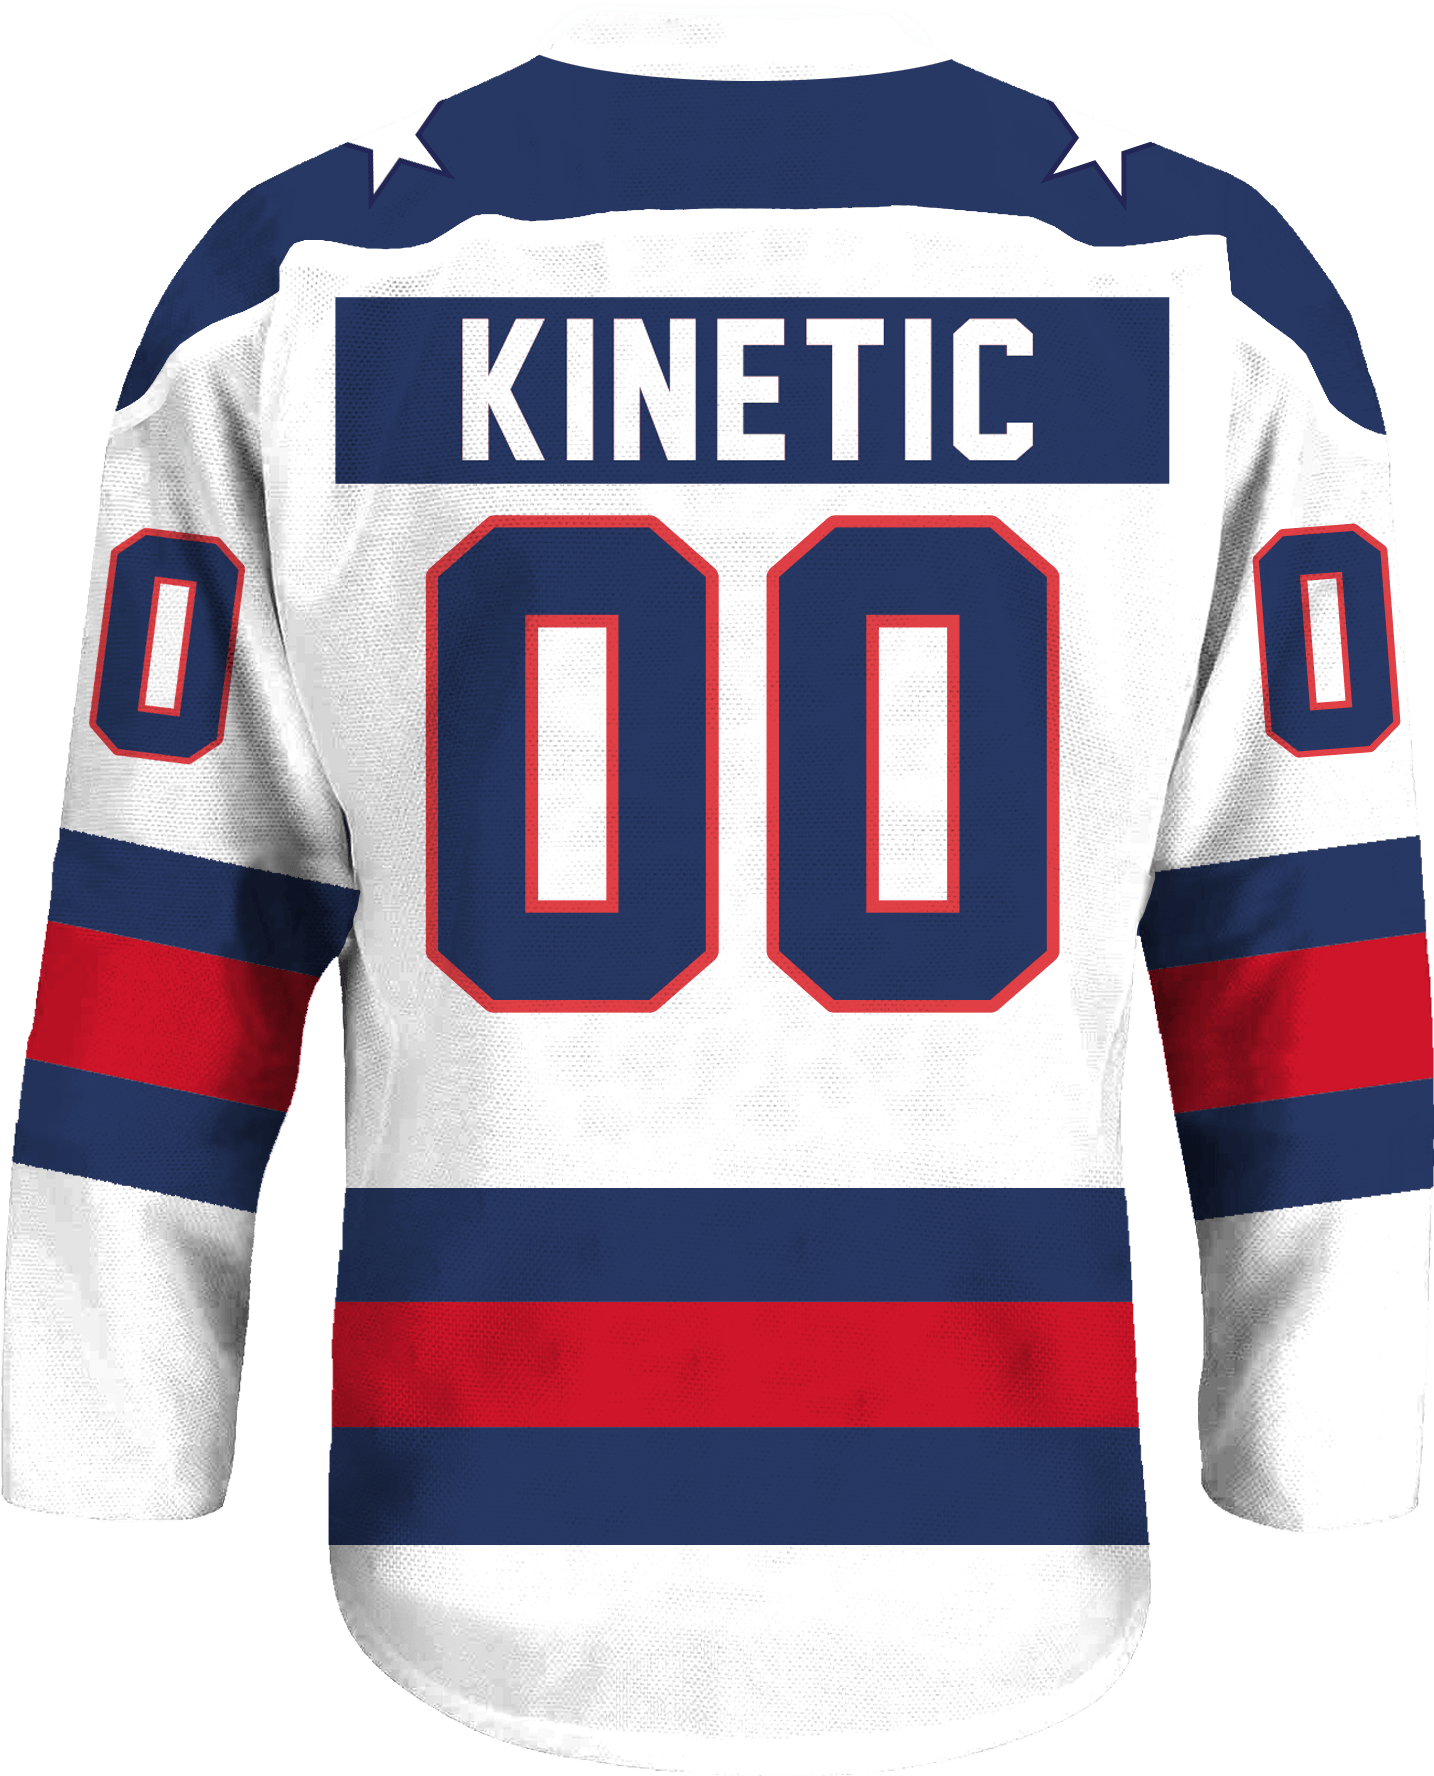 Pi Kappa Phi - Astro Hockey Jersey - Kinetic Society